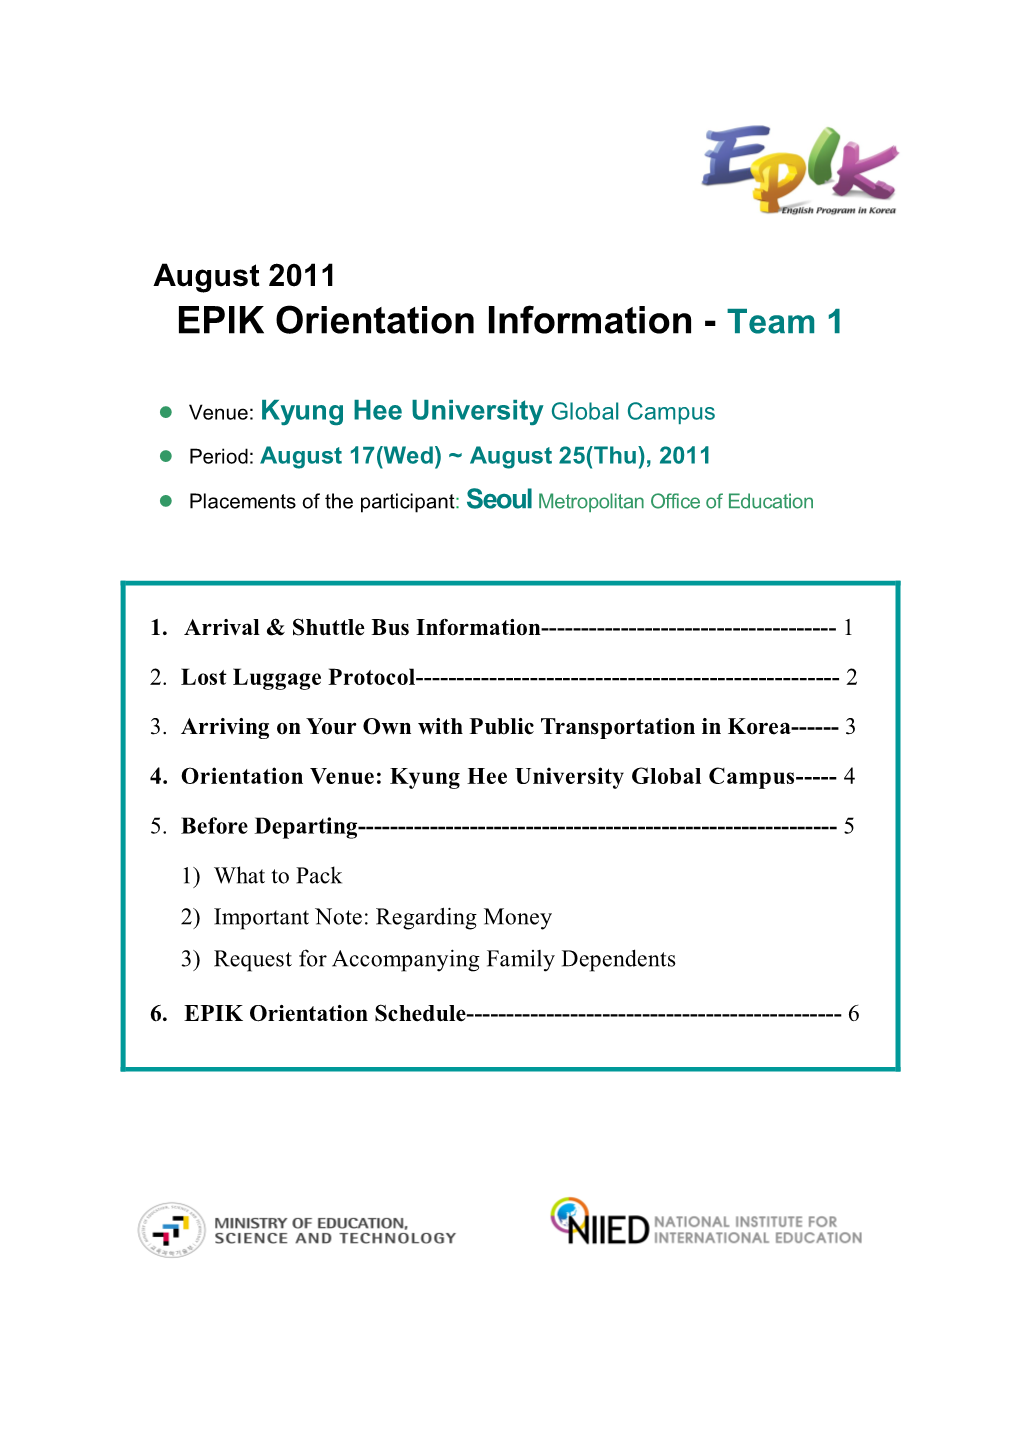 EPIK Orientation Information - Team 1